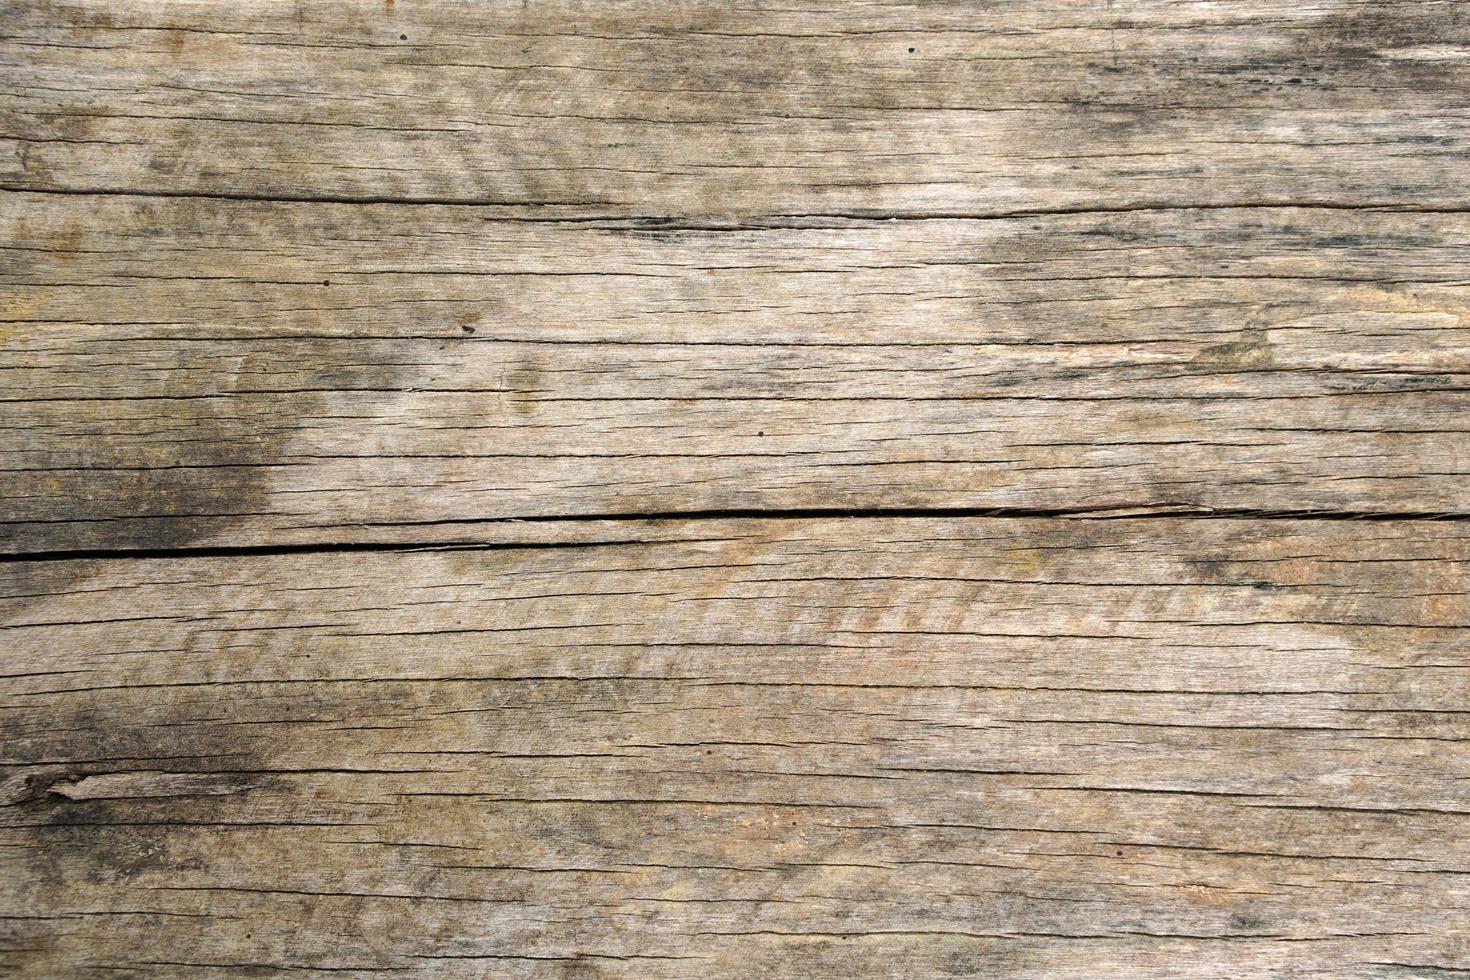 patrón de fondo en el piso de madera foto